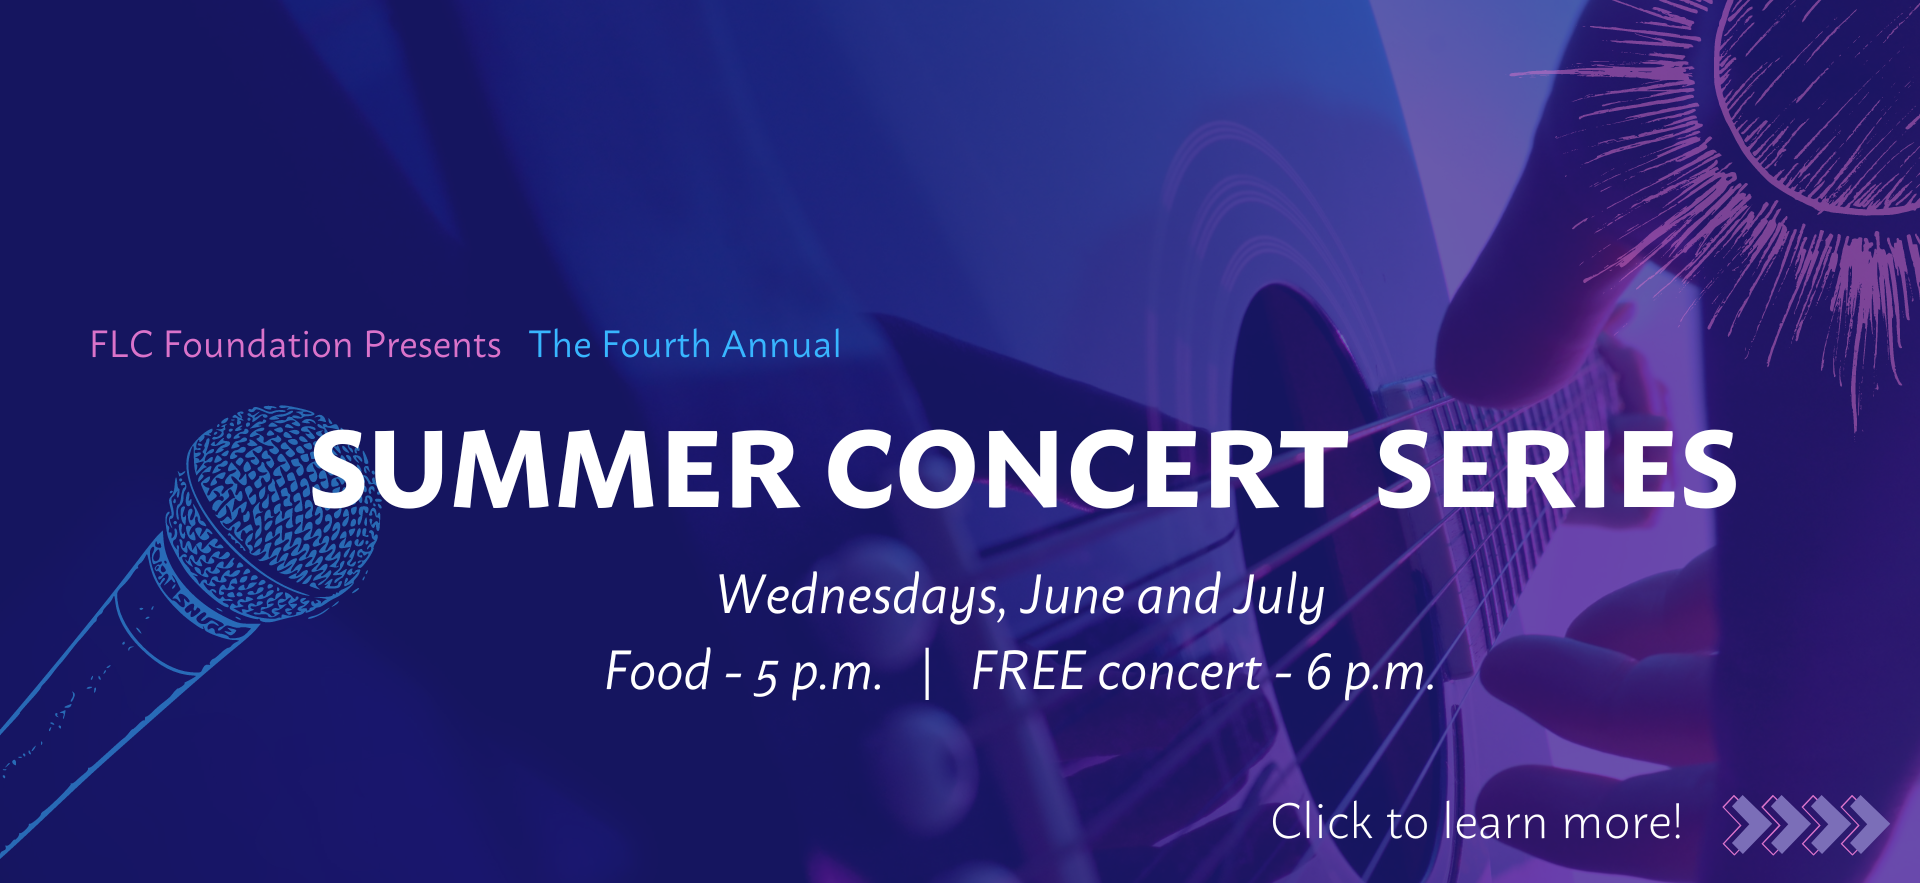 Summer Concert Series Website Banner (1920 x 883 px).png